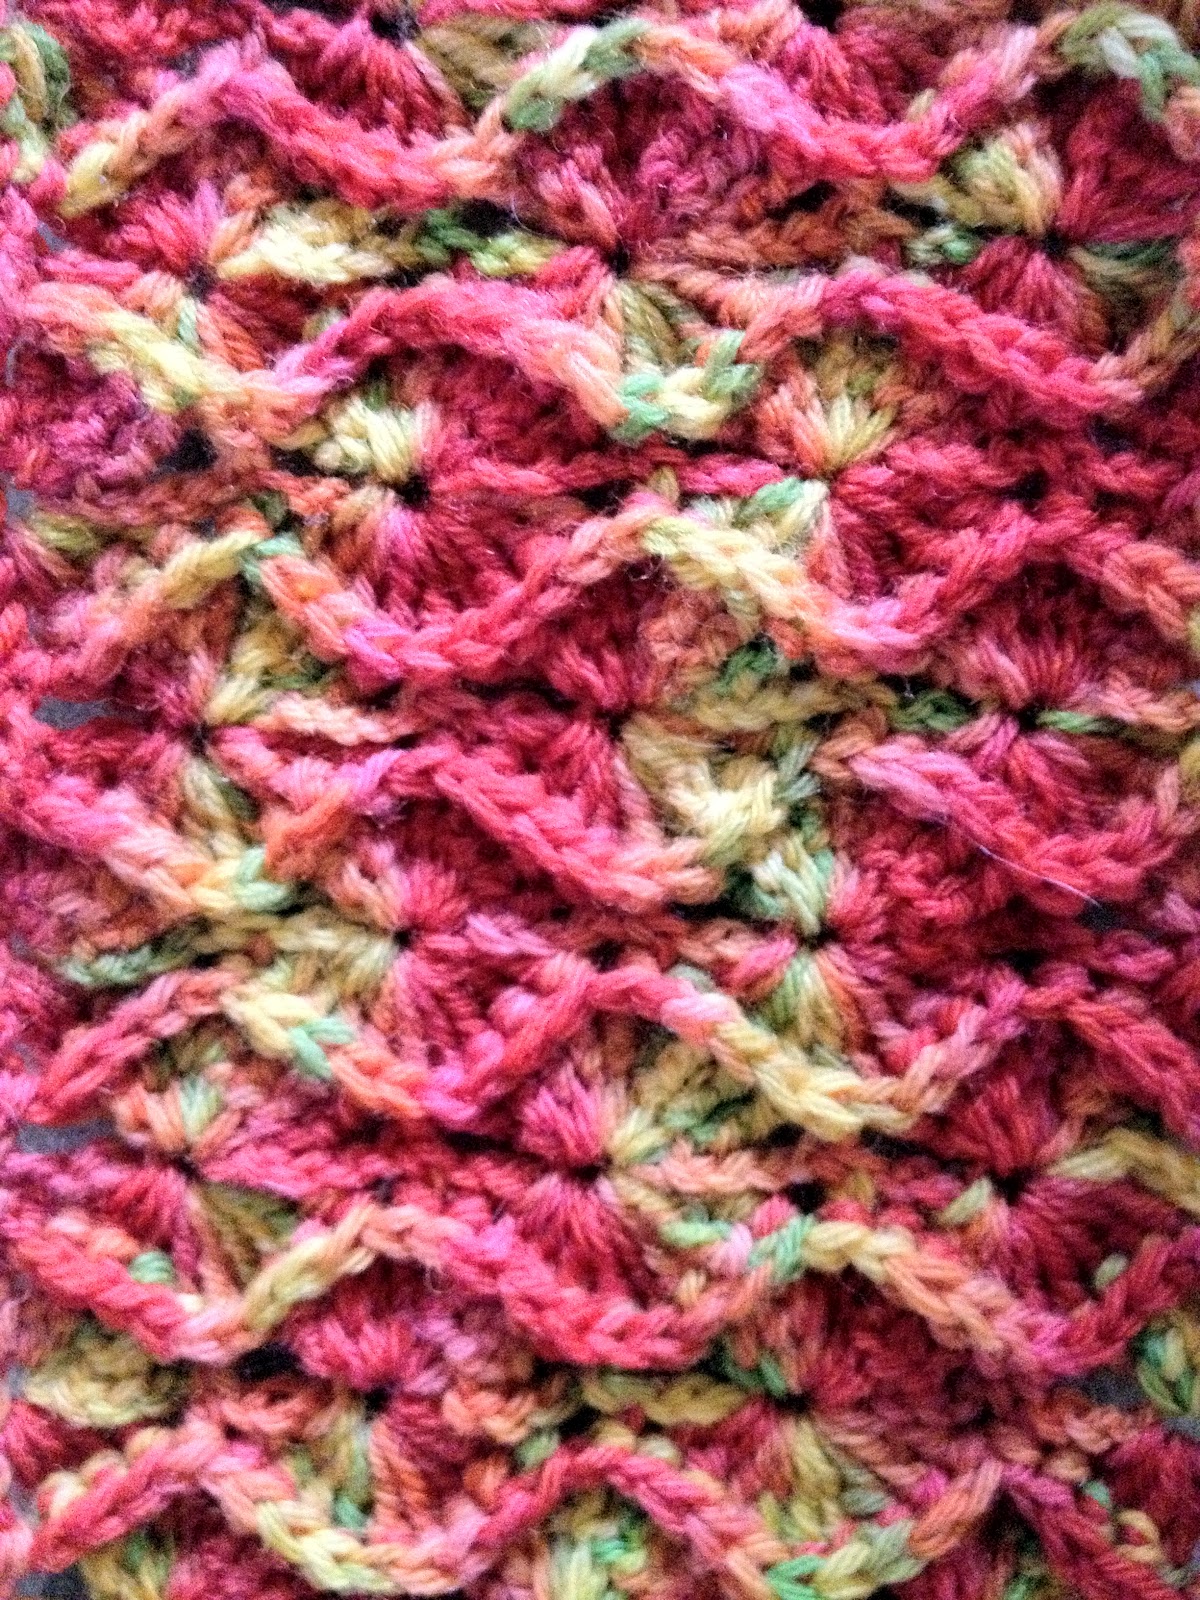 Knitting For All: Bavarian Crochet in Rows